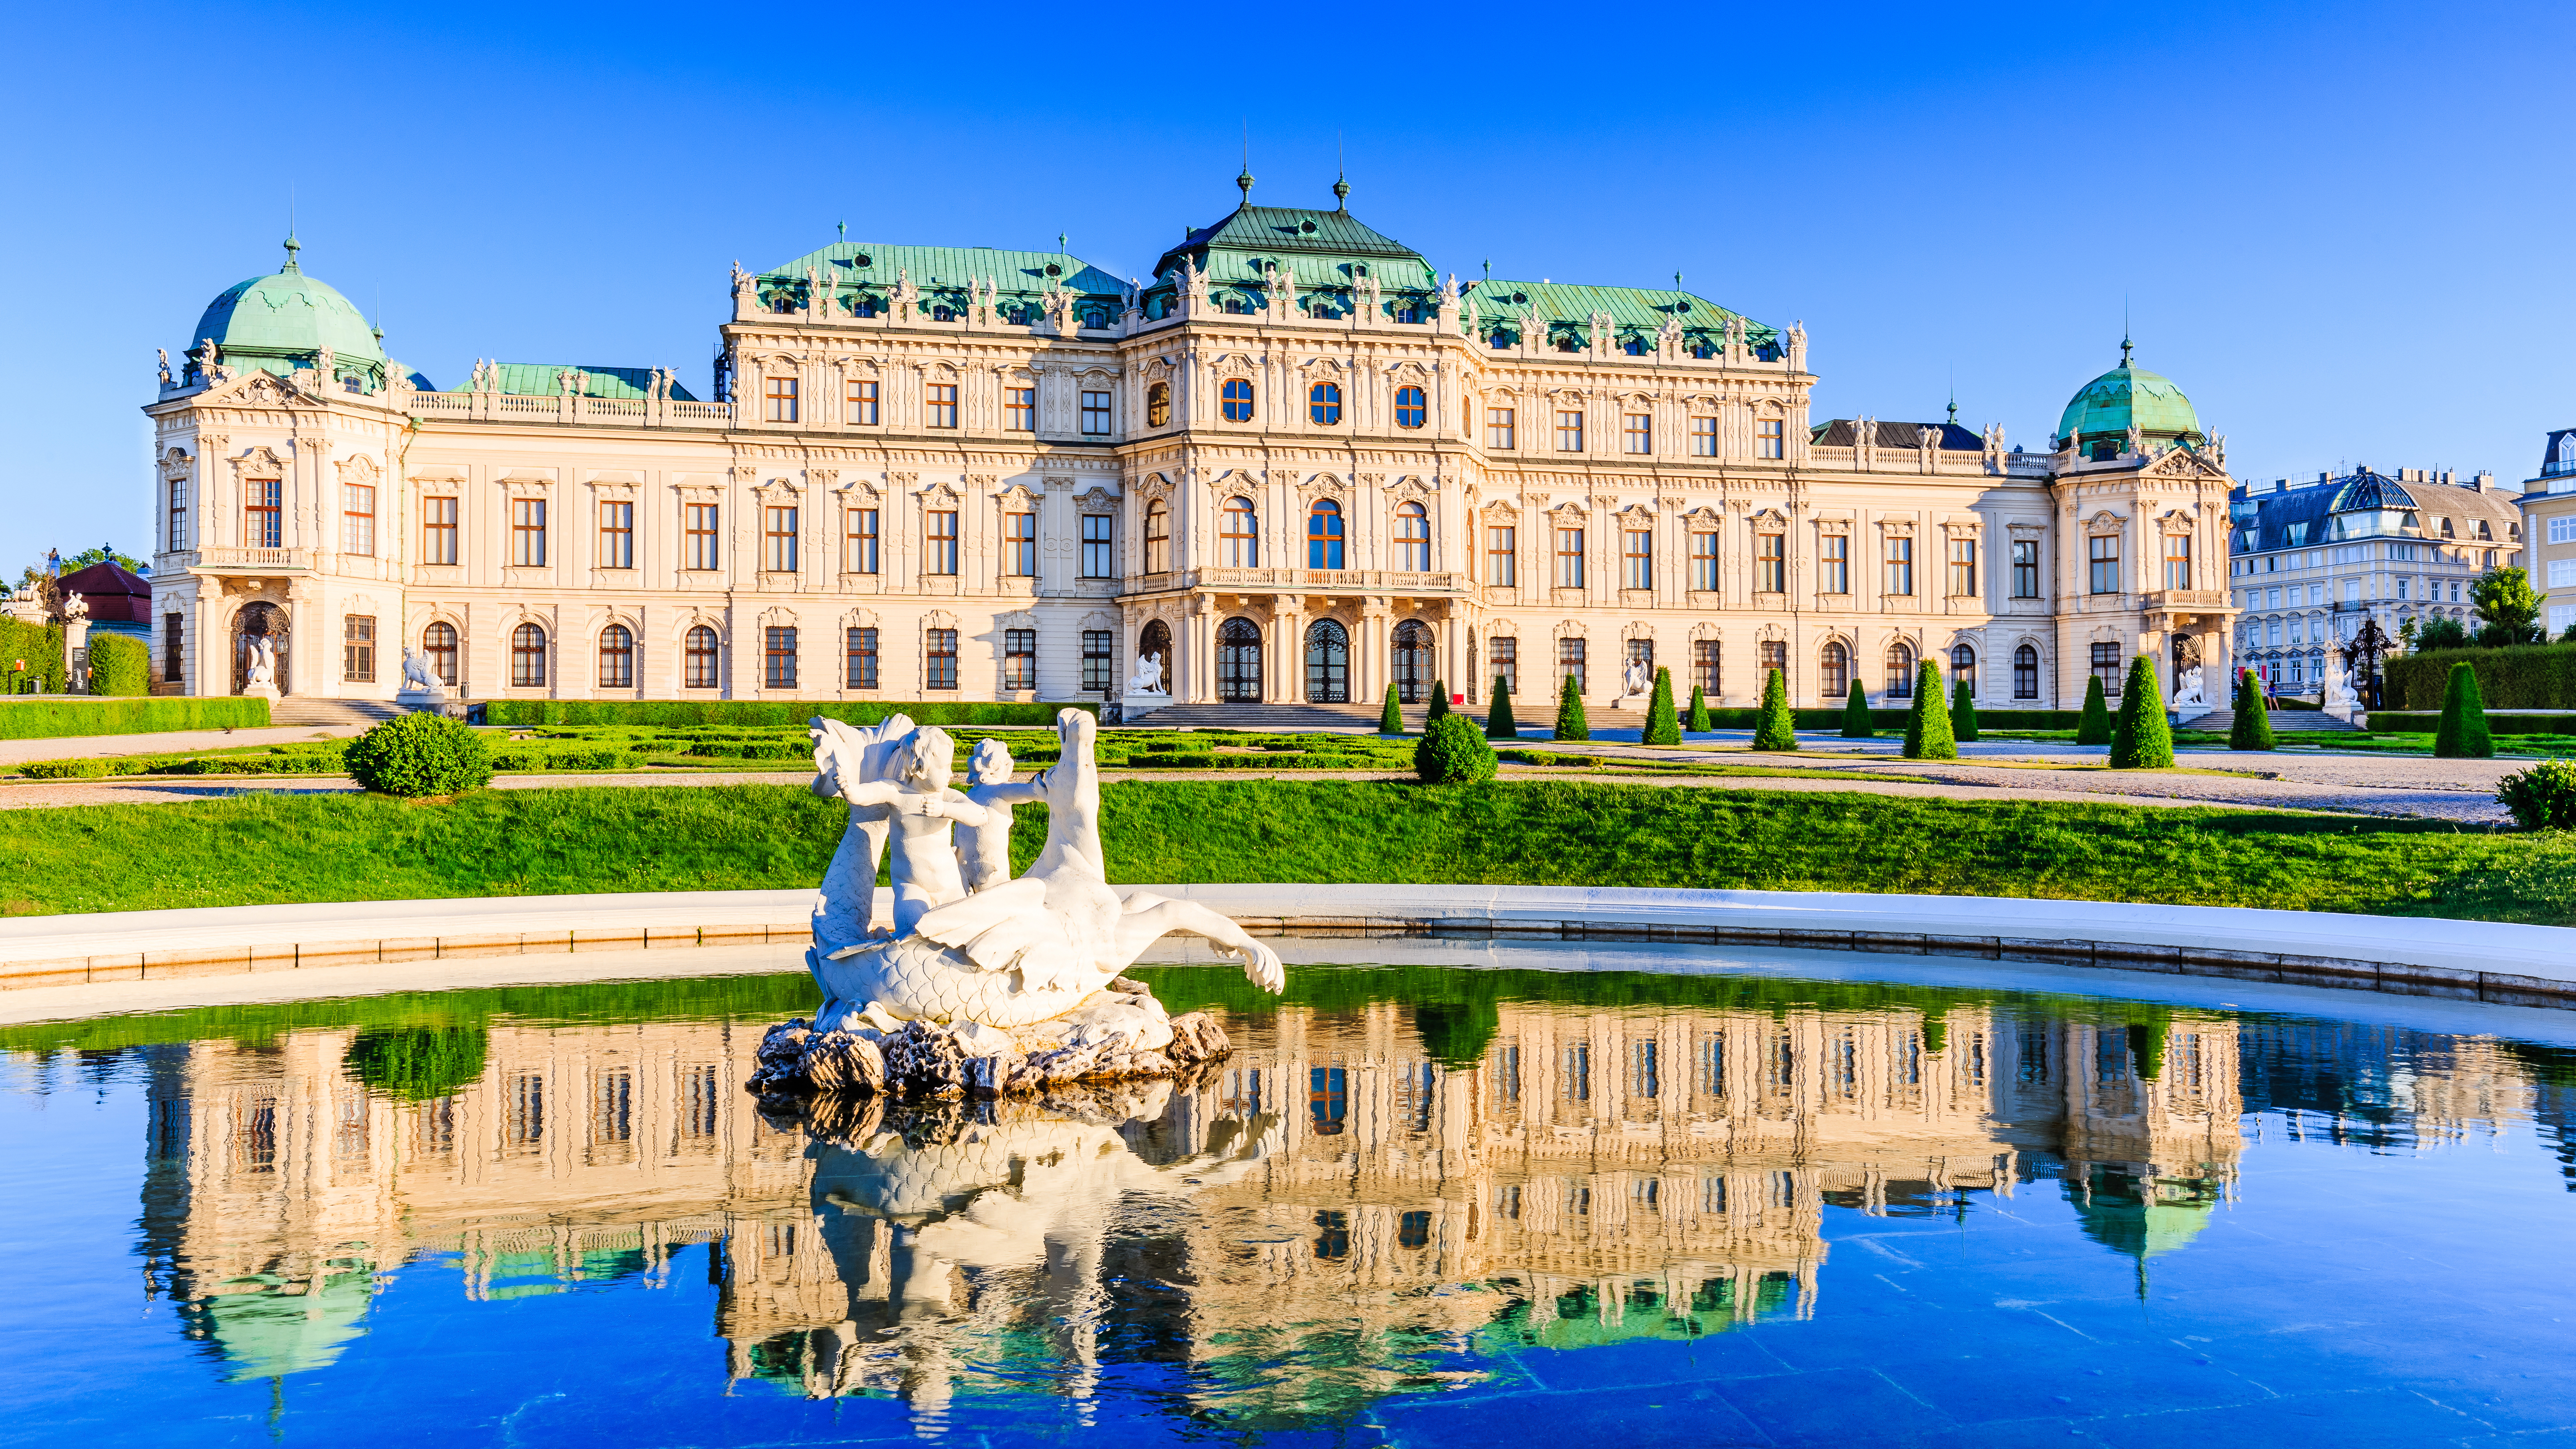 Бельведер дворец в Вене, столице Австрии, куда можно переехать на ПМЖ